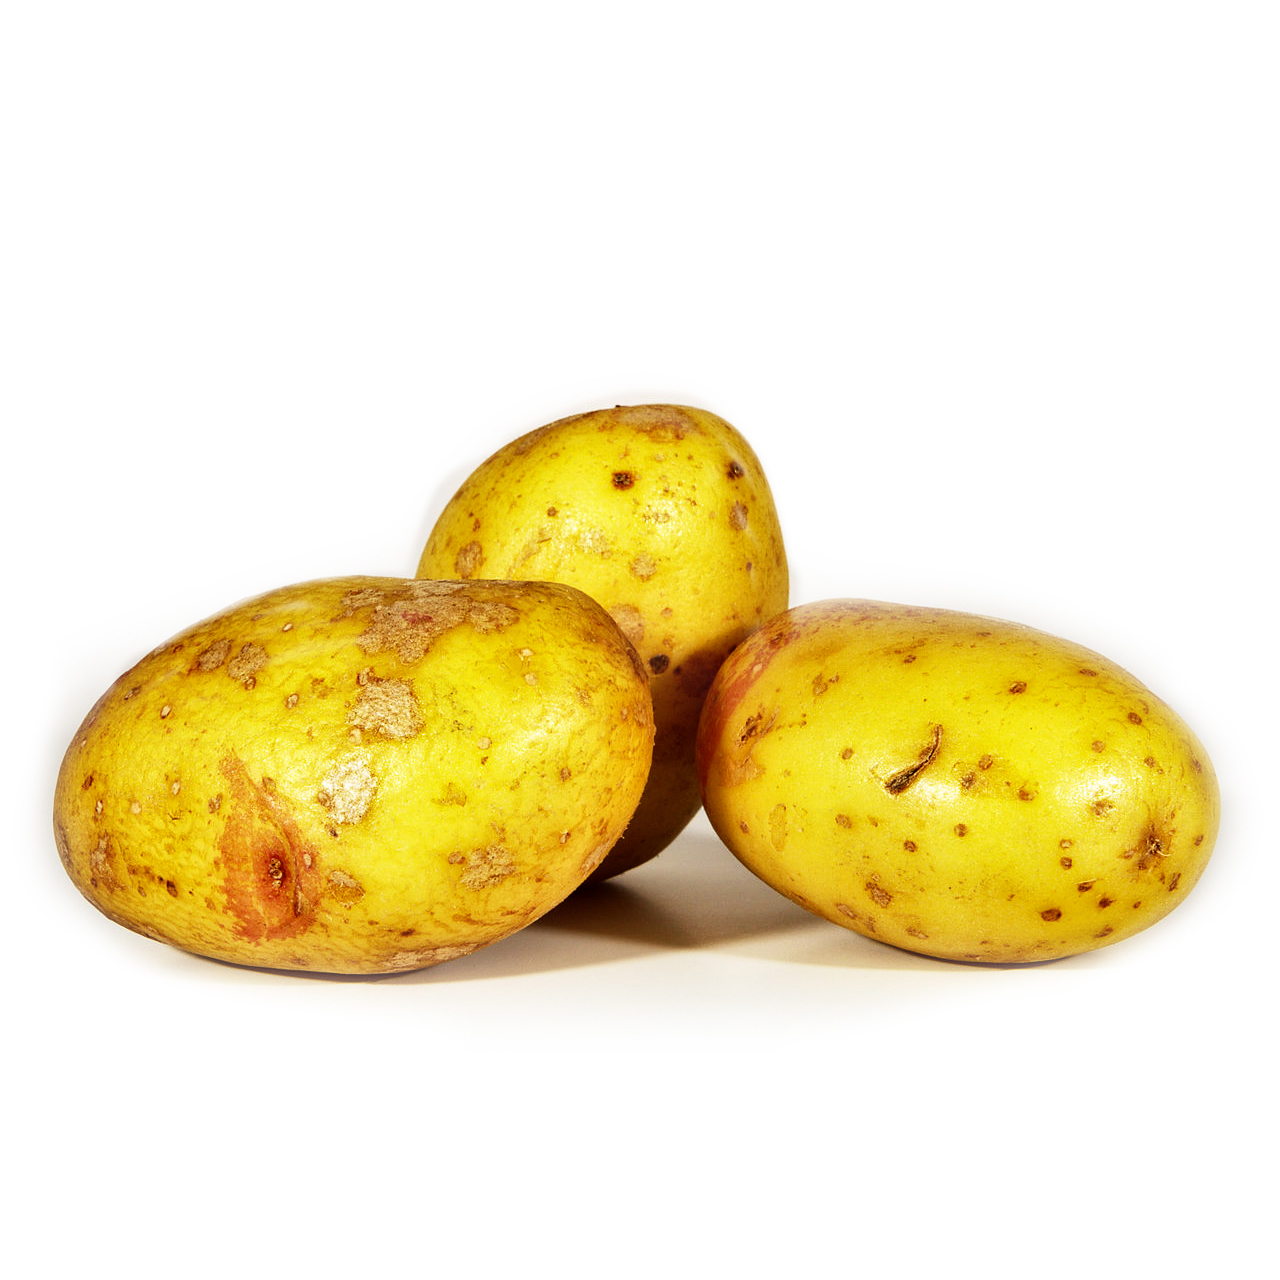 澳洲愛德華國王薯仔(King Edward potato)1千克*